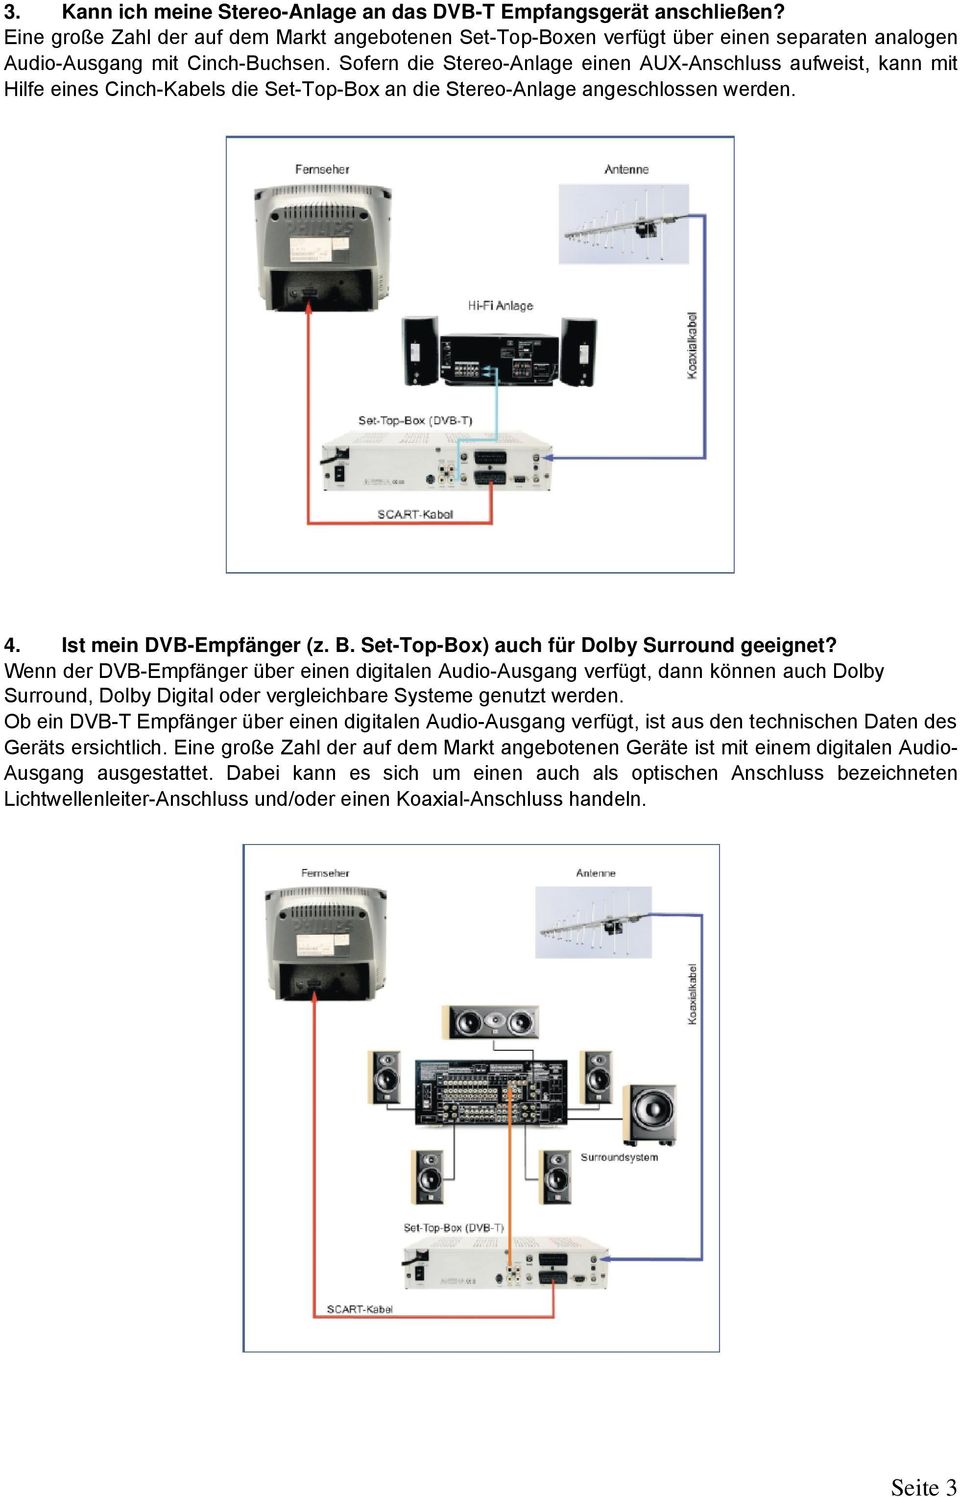 Sofern die Stereo-Anlage einen AUX-Anschluss aufweist, kann mit Hilfe eines Cinch-Kabels die Set-Top-Box an die Stereo-Anlage angeschlossen werden. 4. Ist mein DVB-Empfänger (z. B.